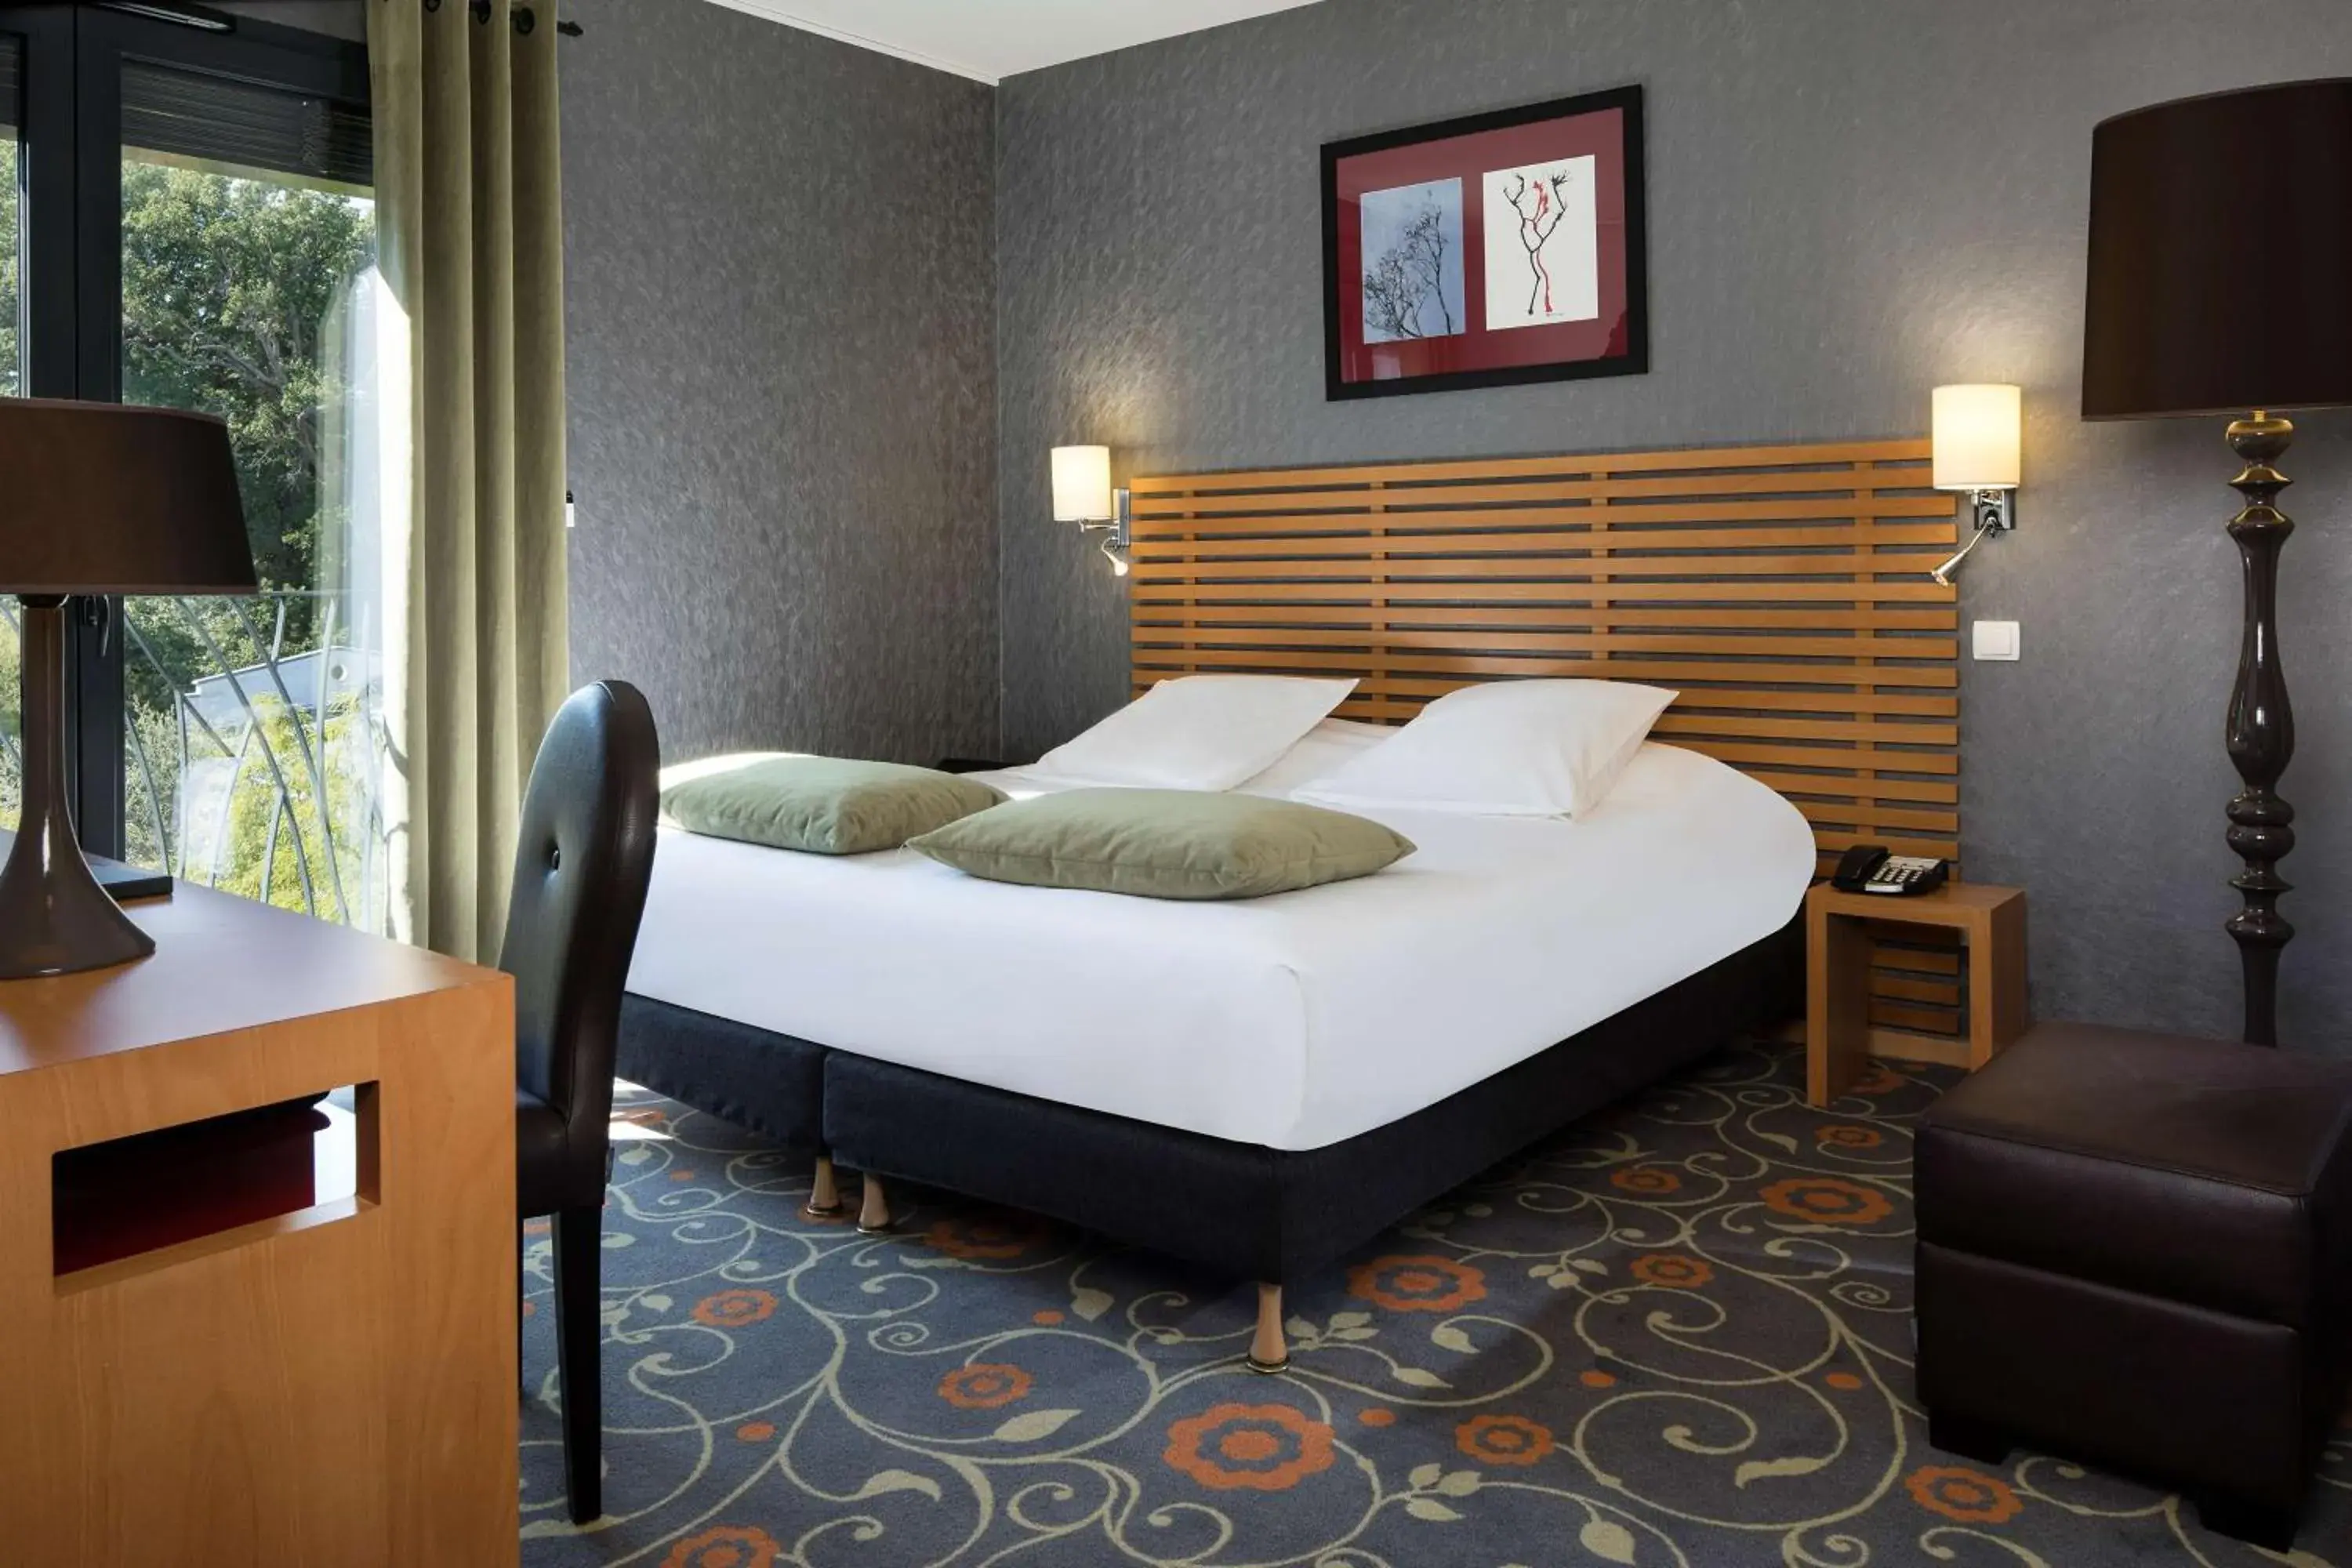 Photo of the whole room, Bed in Best Western Plus Hotel De La Regate